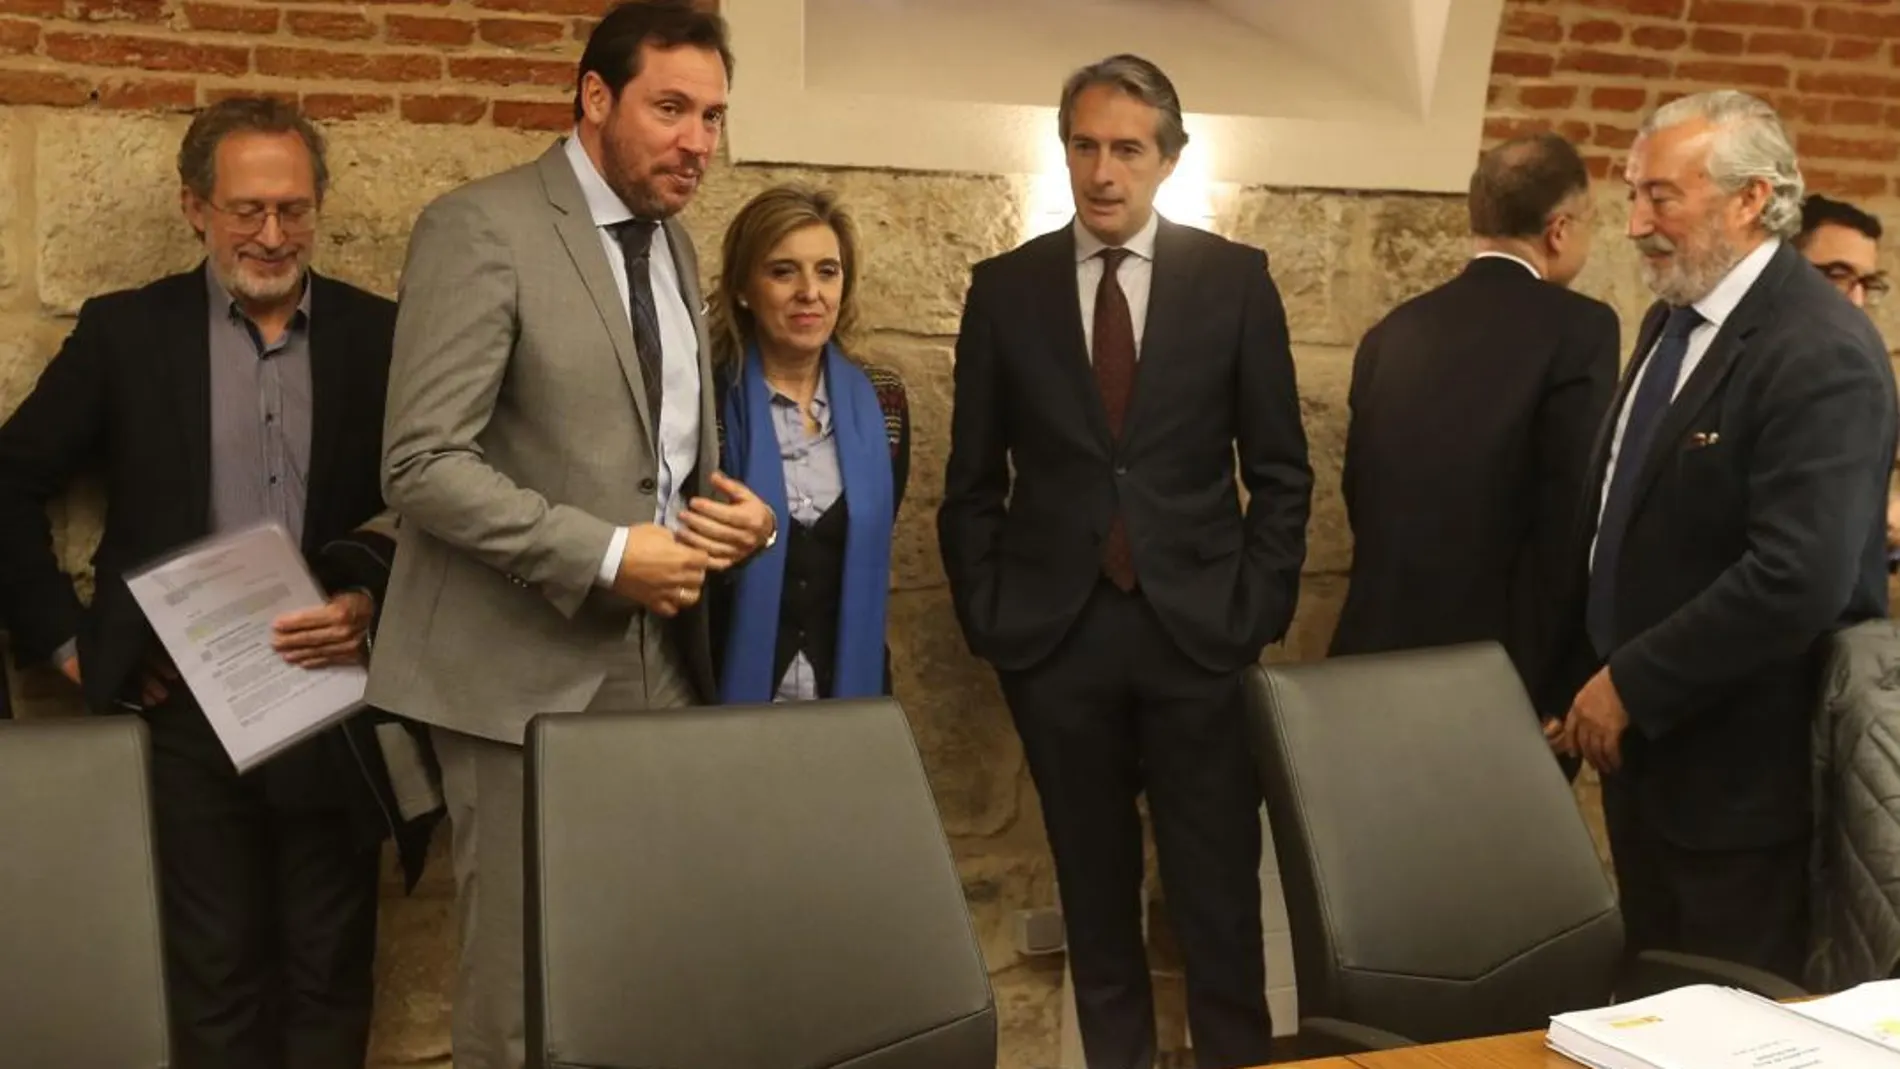 Manuel Saravia, Óscar Puente, María José Salgueiro, Íñigo de la Serna y Julio Gómez-Pomar, durante la reunión de la Sociedad Valladolid Alta Velocidad